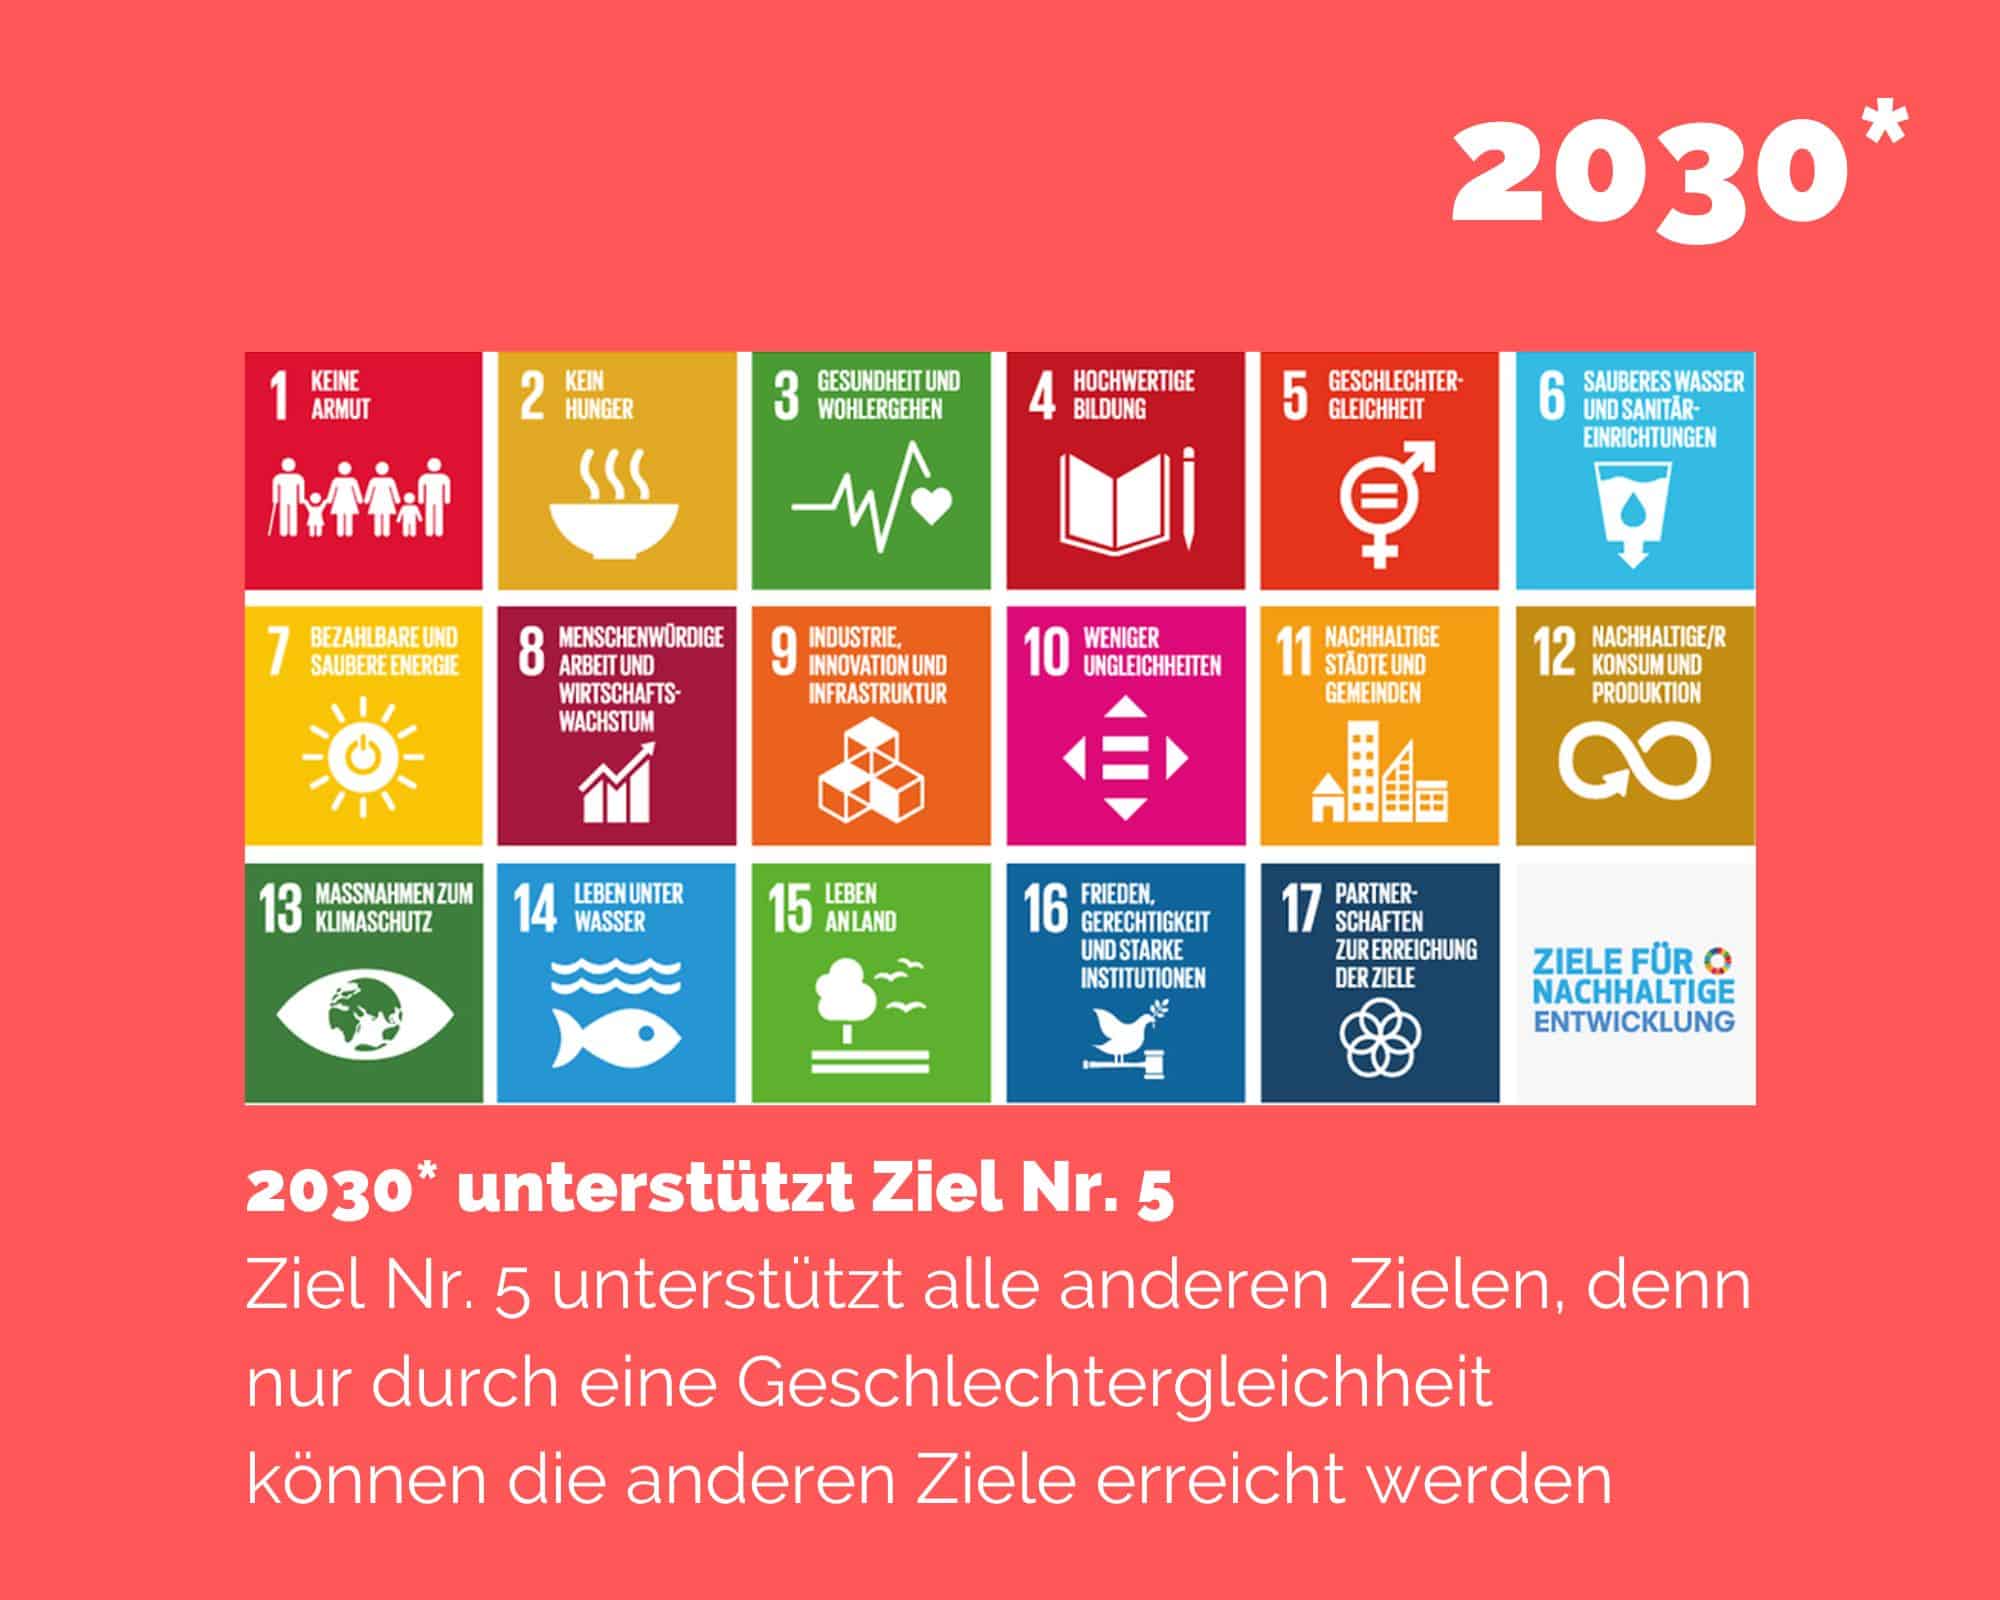 Die Ziele der Agenda 2030